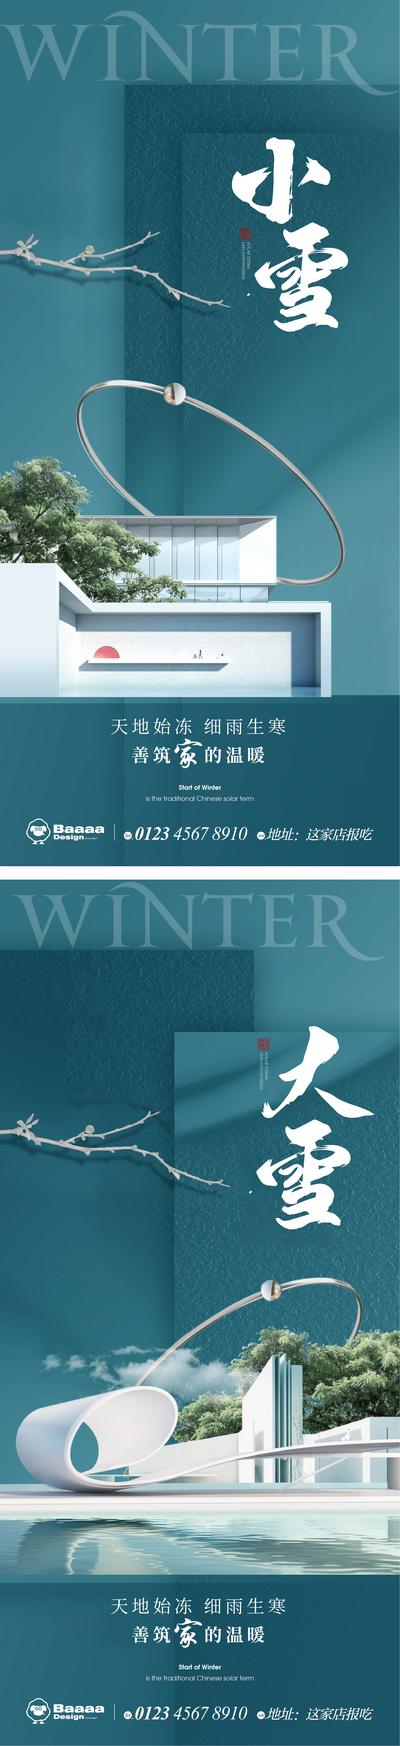 南门网 广告 海报 节气 小雪 大雪 雪景 雪花 排版 精致